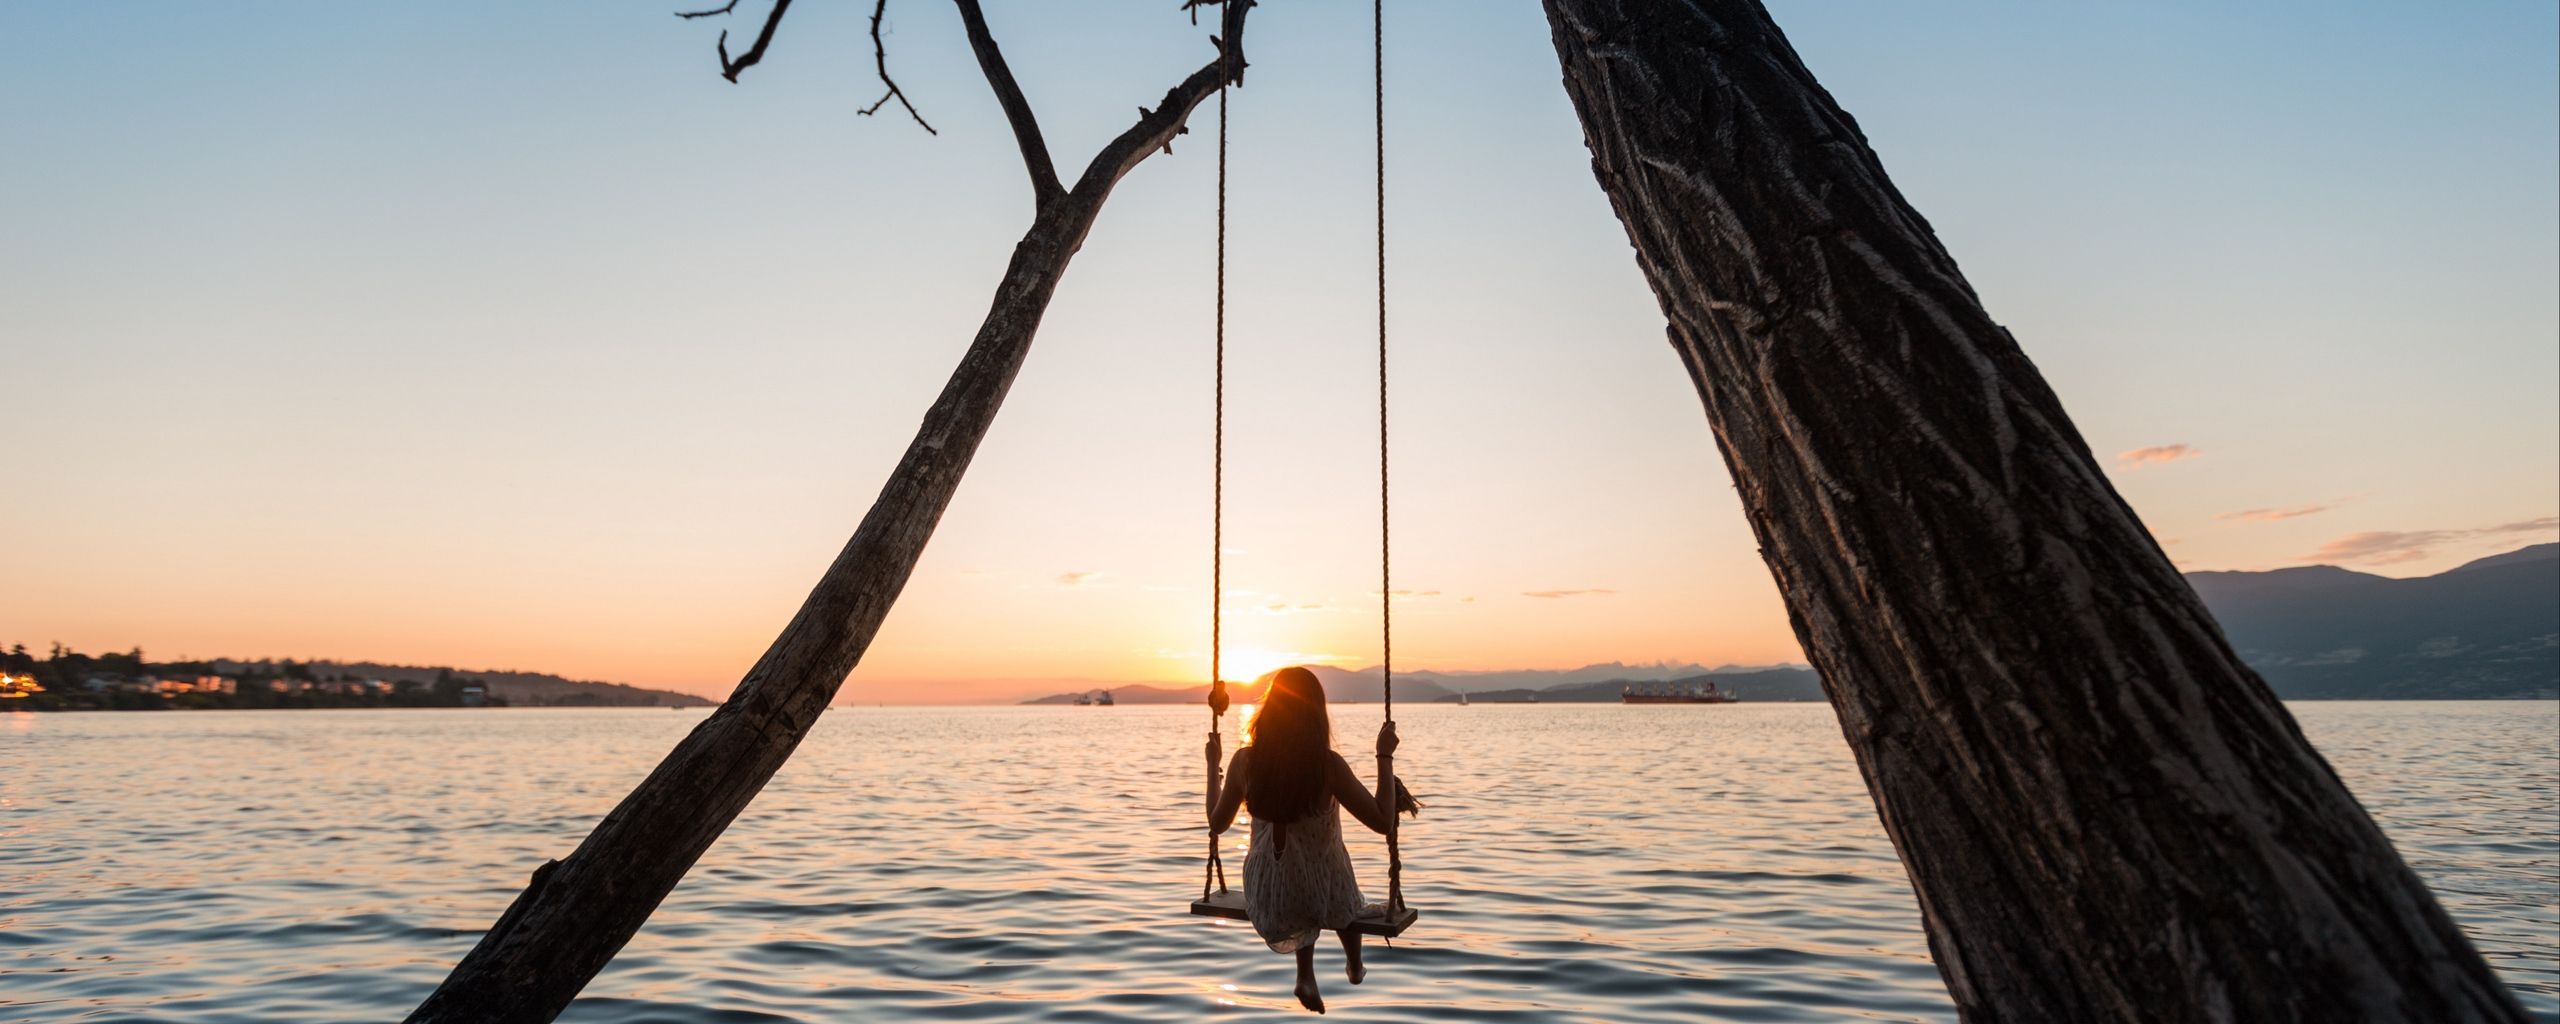 Download wallpaper 2560x1024 swing, girl, sunset, lake, river